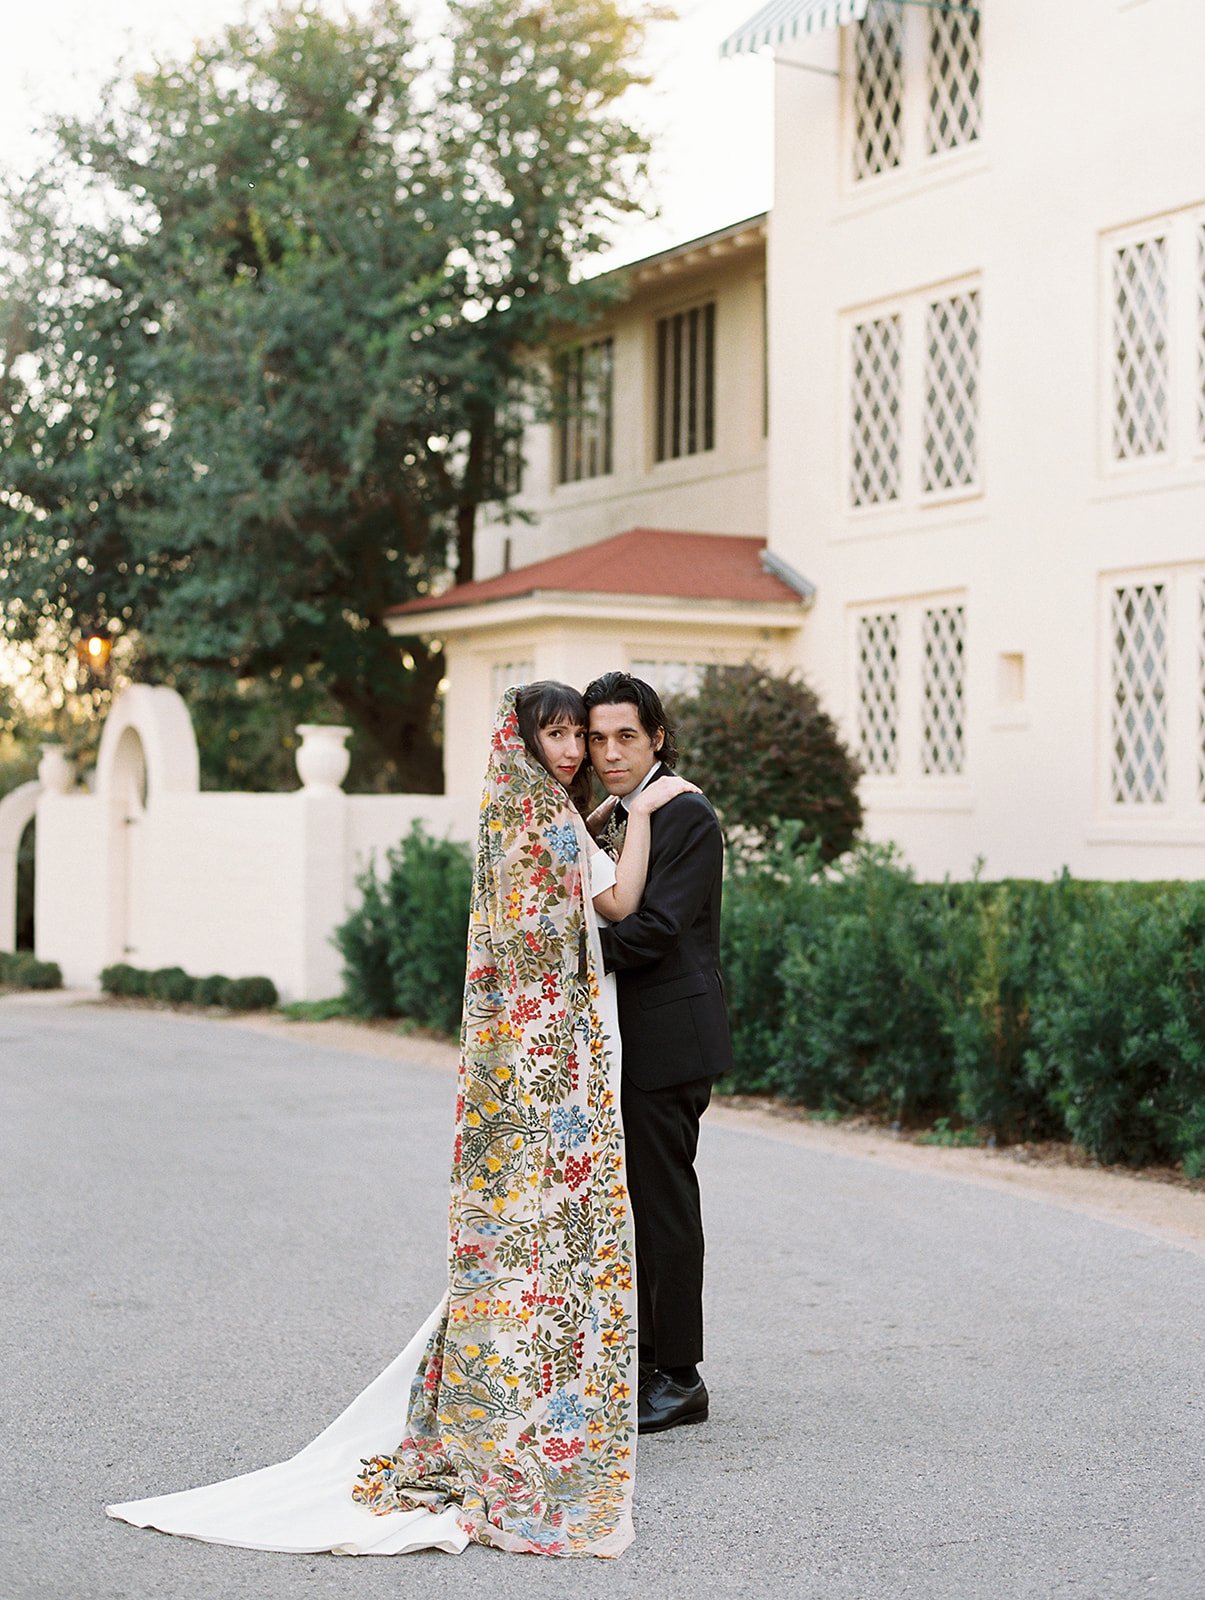 Best-Austin-Wedding-Photographers-Elopement-Film-35mm-Asheville-Santa-Barbara-Laguna-Gloria-39.jpg